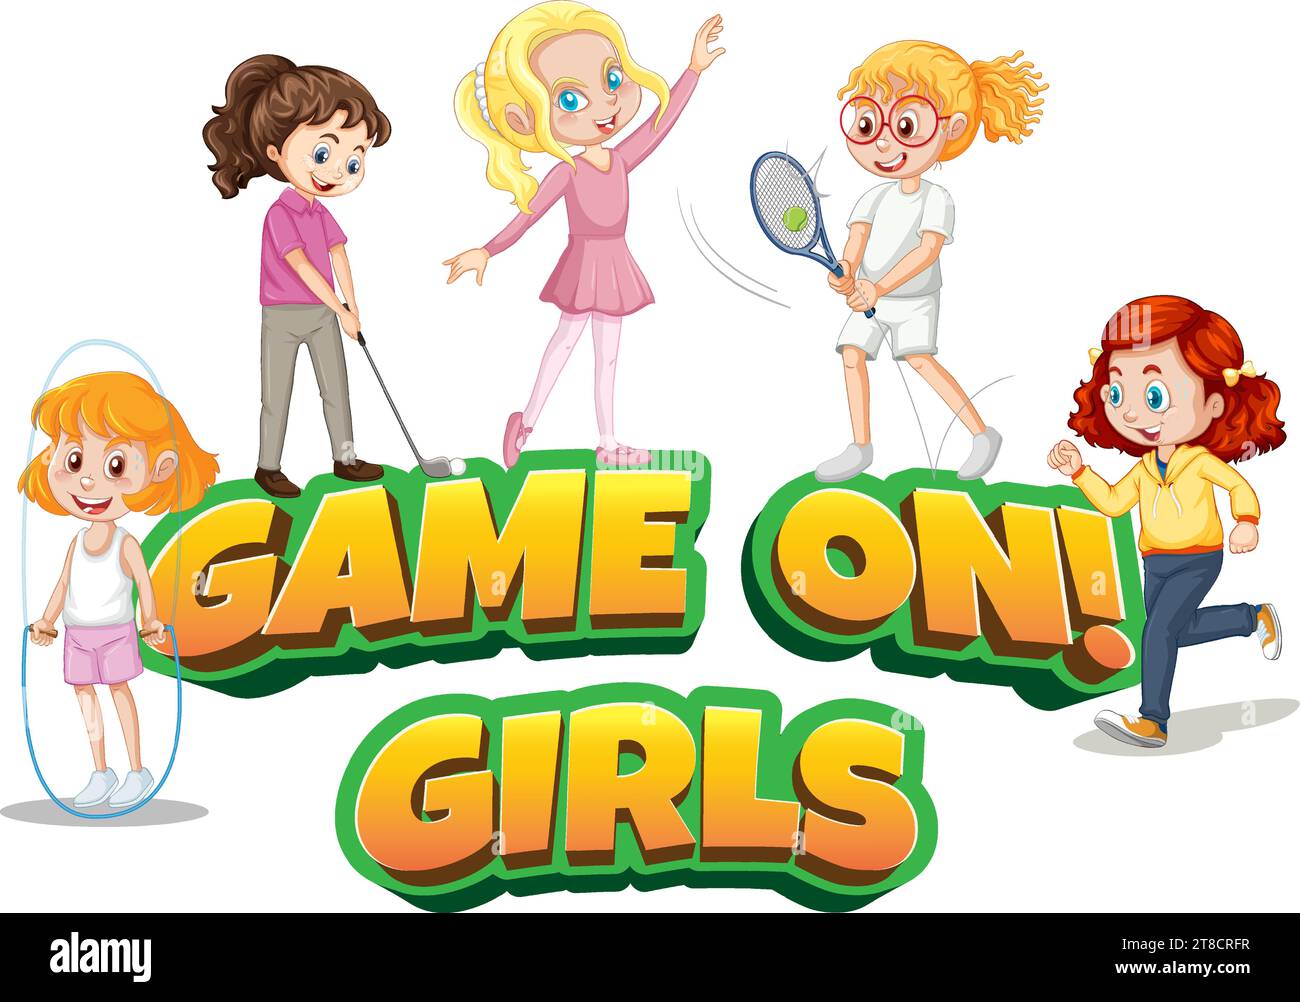 Un ensemble de personnages de dessins animés de fille engagés dans l'exercice, le sport, et un jeu, représenté dans un style d'illustration vectorielle Illustration de Vecteur